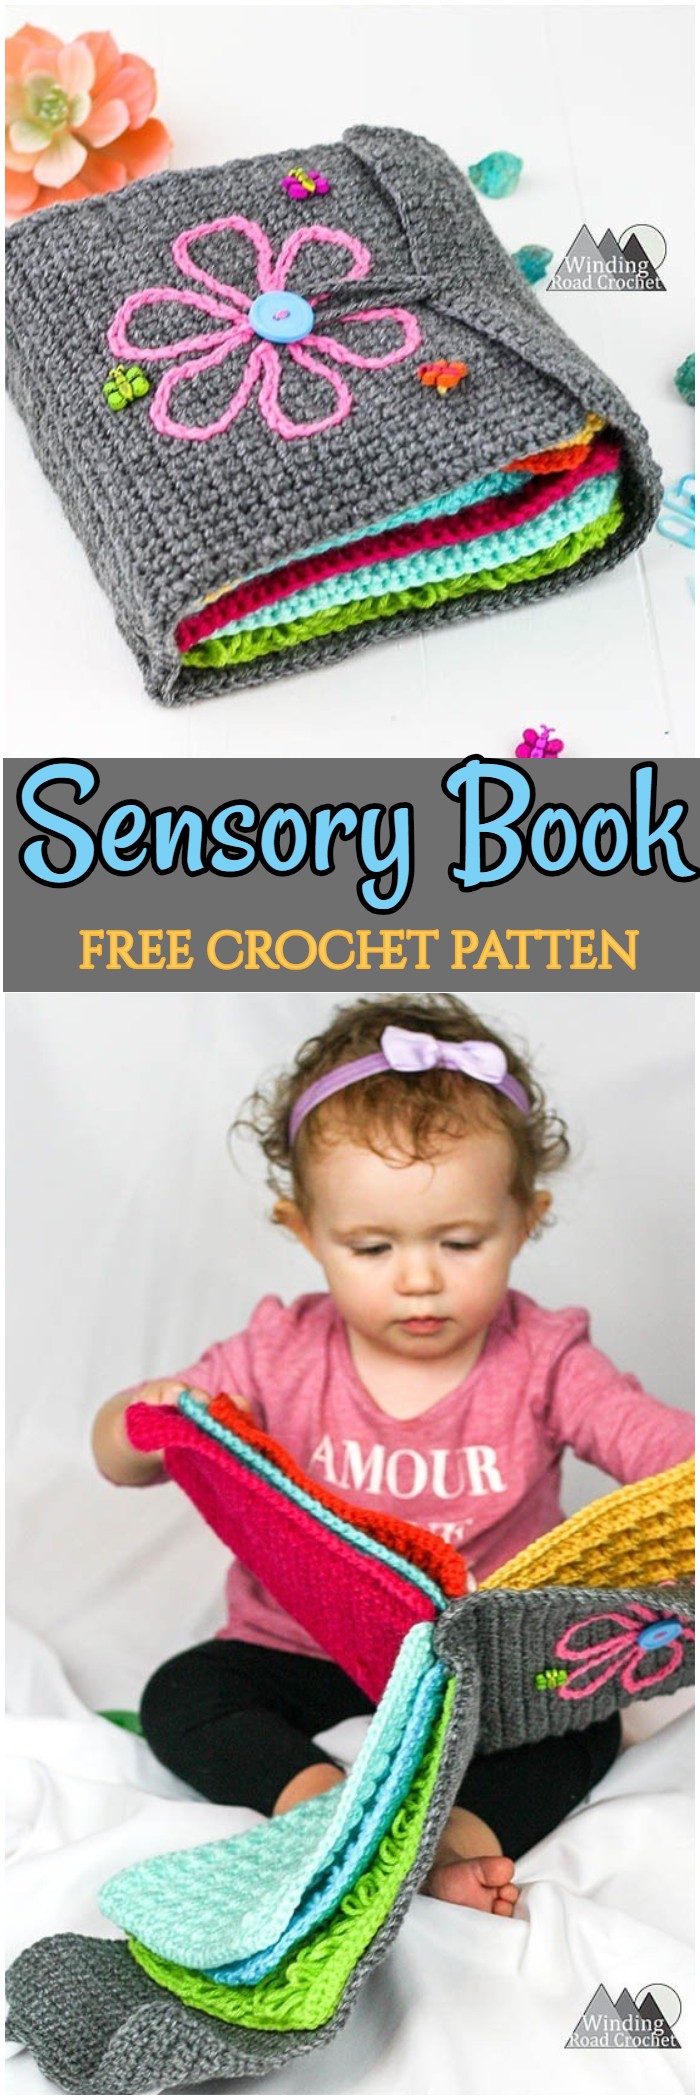 Crochet Sensory Book